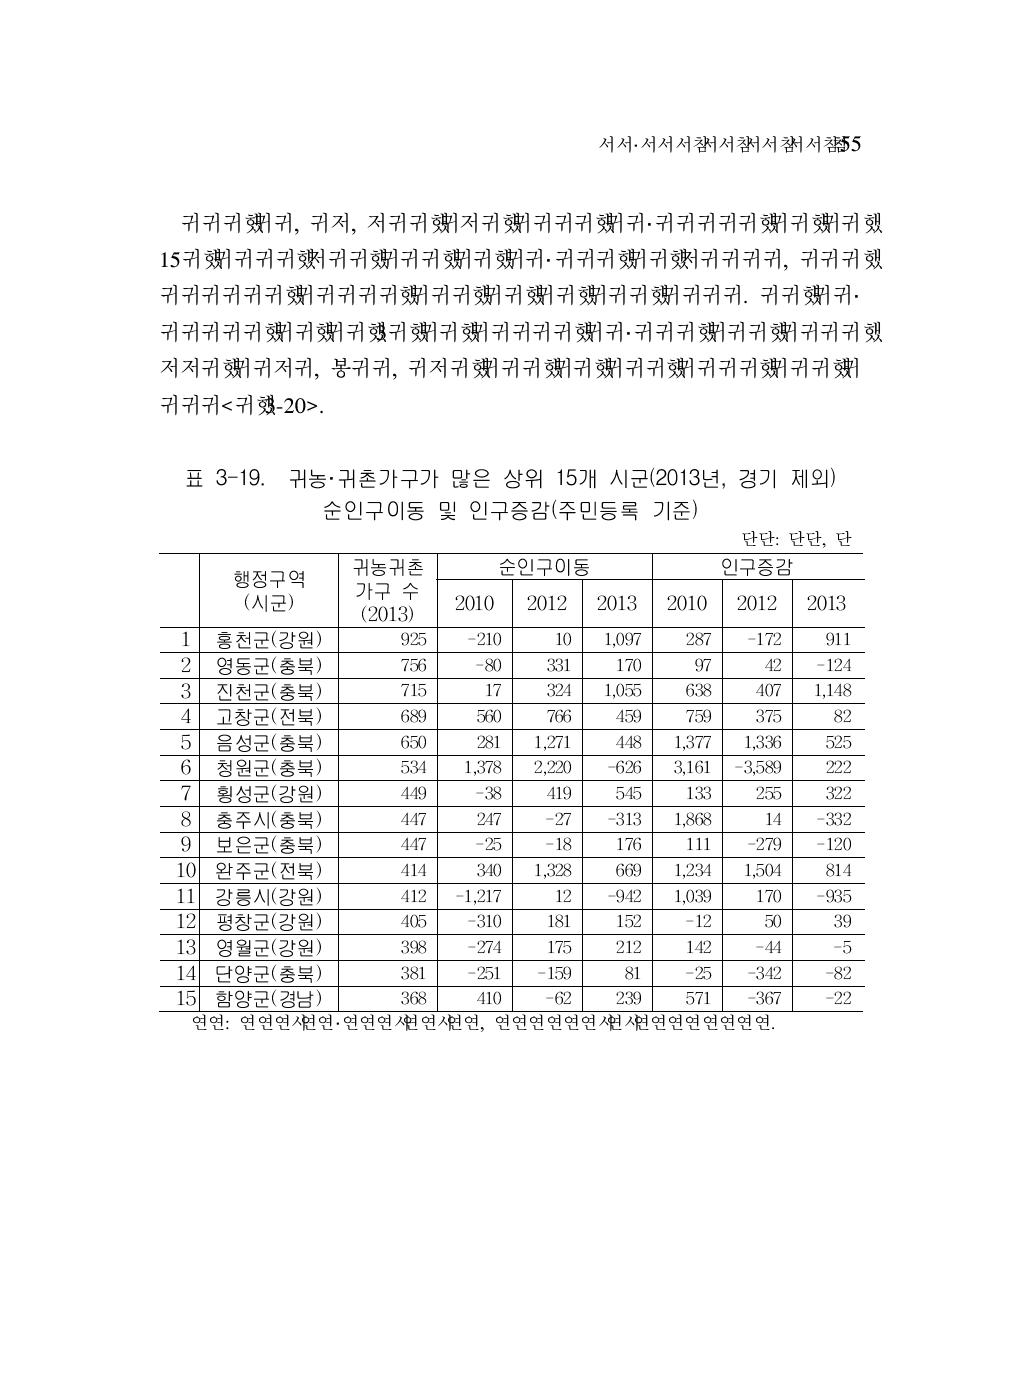 귀농·귀촌가구가 많은 상위 15개 시군(2013년, 경기 제외) 순인구이동 및 인구증감(주민등록 기준)